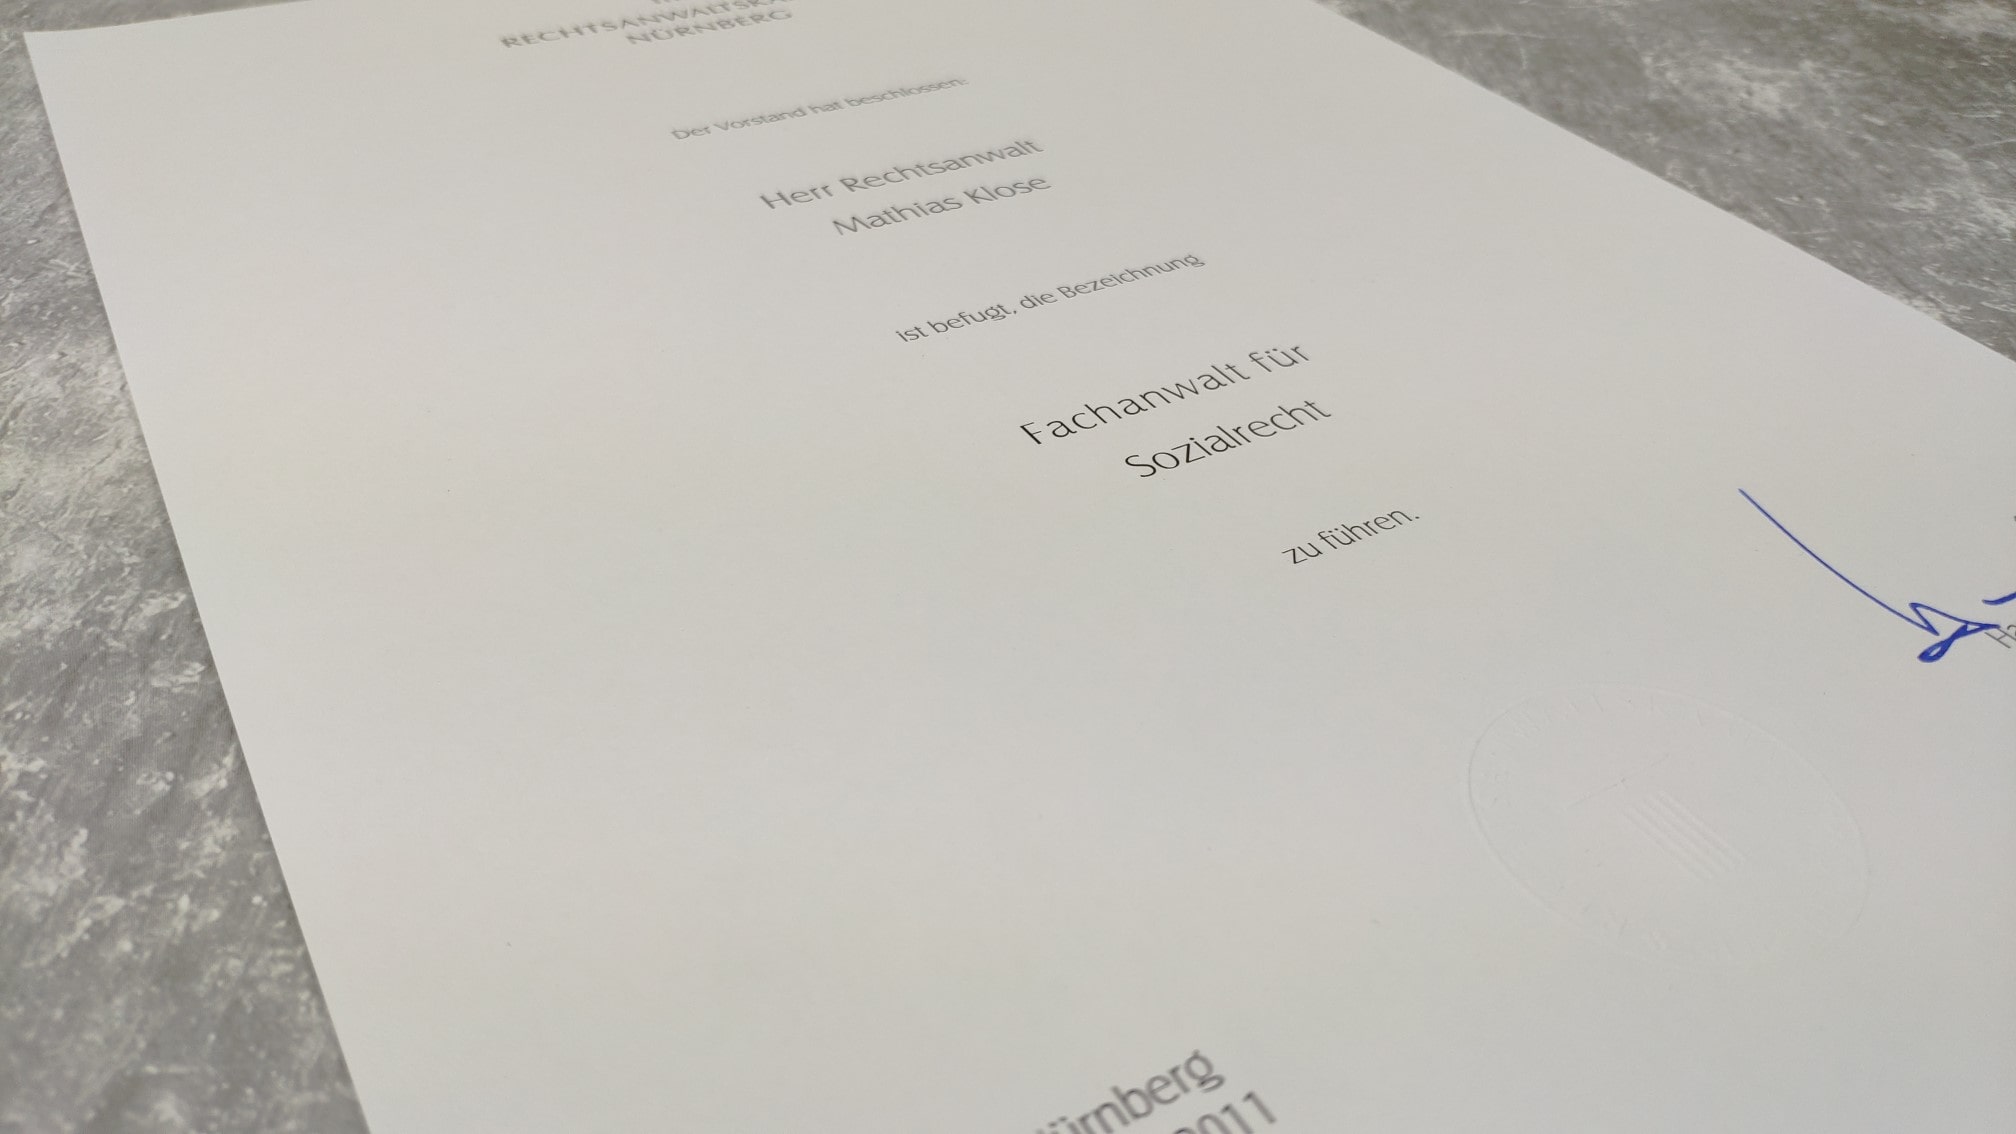 Im Bild: Urkunde der Rechtsanwaltskammer Nürnberg für Rechtsanwalt Mathias Klose über die Verleihung der Befugnis zum Führen der Bezeichnung Fachanwalt für Sozialrecht aus dem Jahr 2011